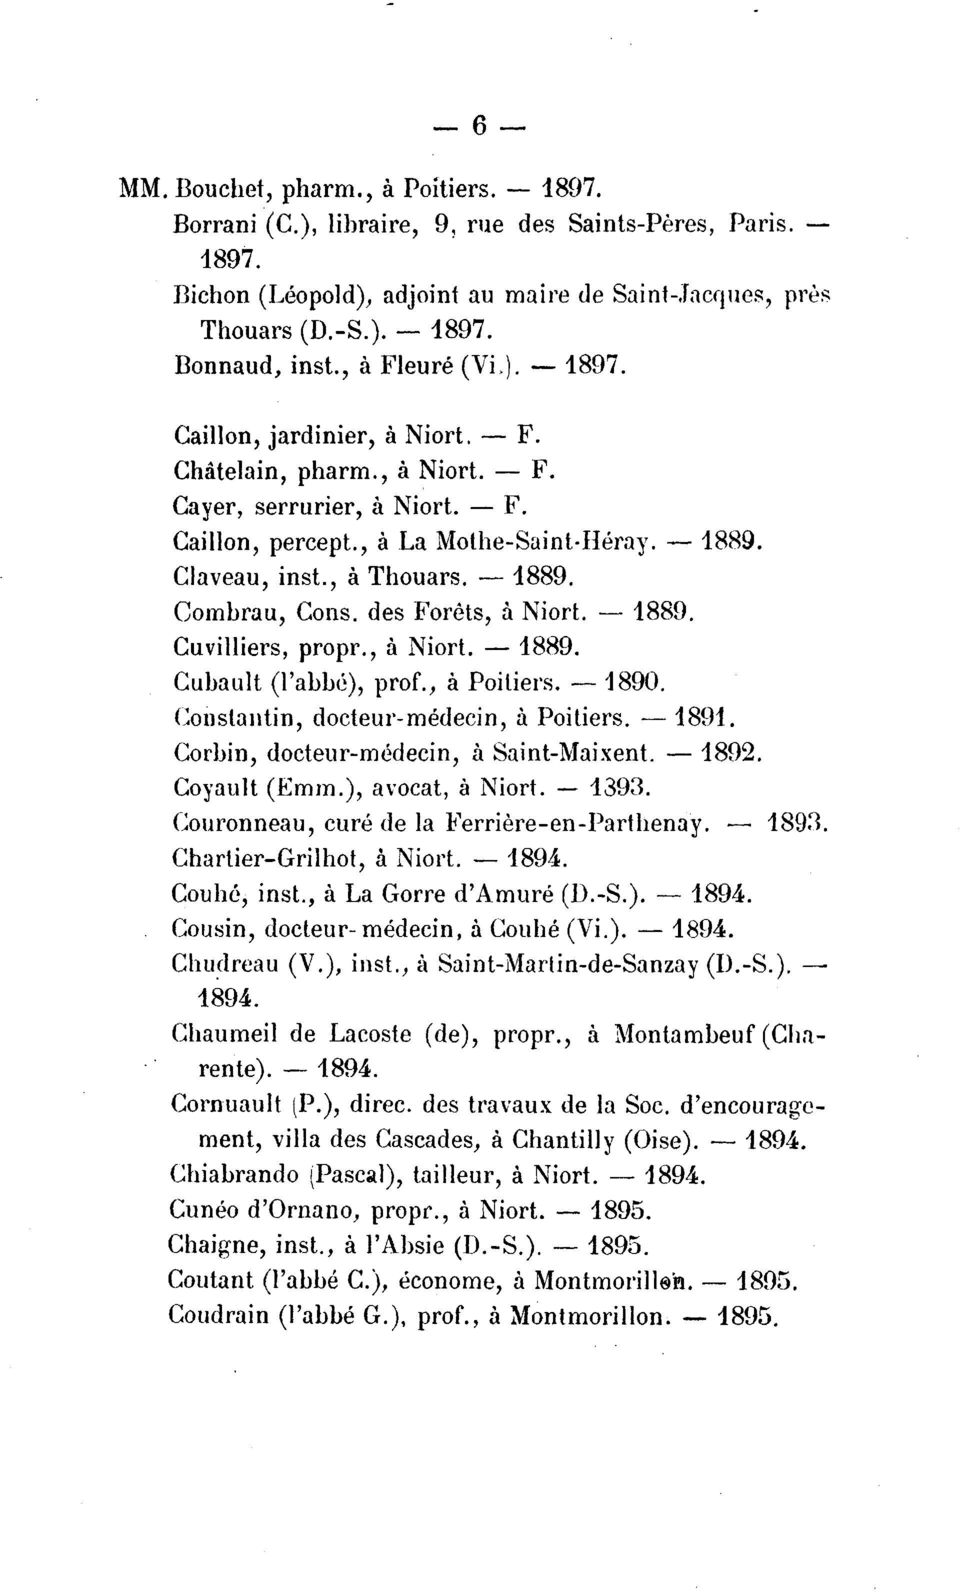 , a Thouars. - 1889. Combrau, Cons. des Forets, a Niort. - 1889. Cuvilliers, propr., a Niort.- 1889. Cubault (l'abm), prof., a Poitiers. --1890. Constantin, docteur-medecin, a Poitiers. - 1891.